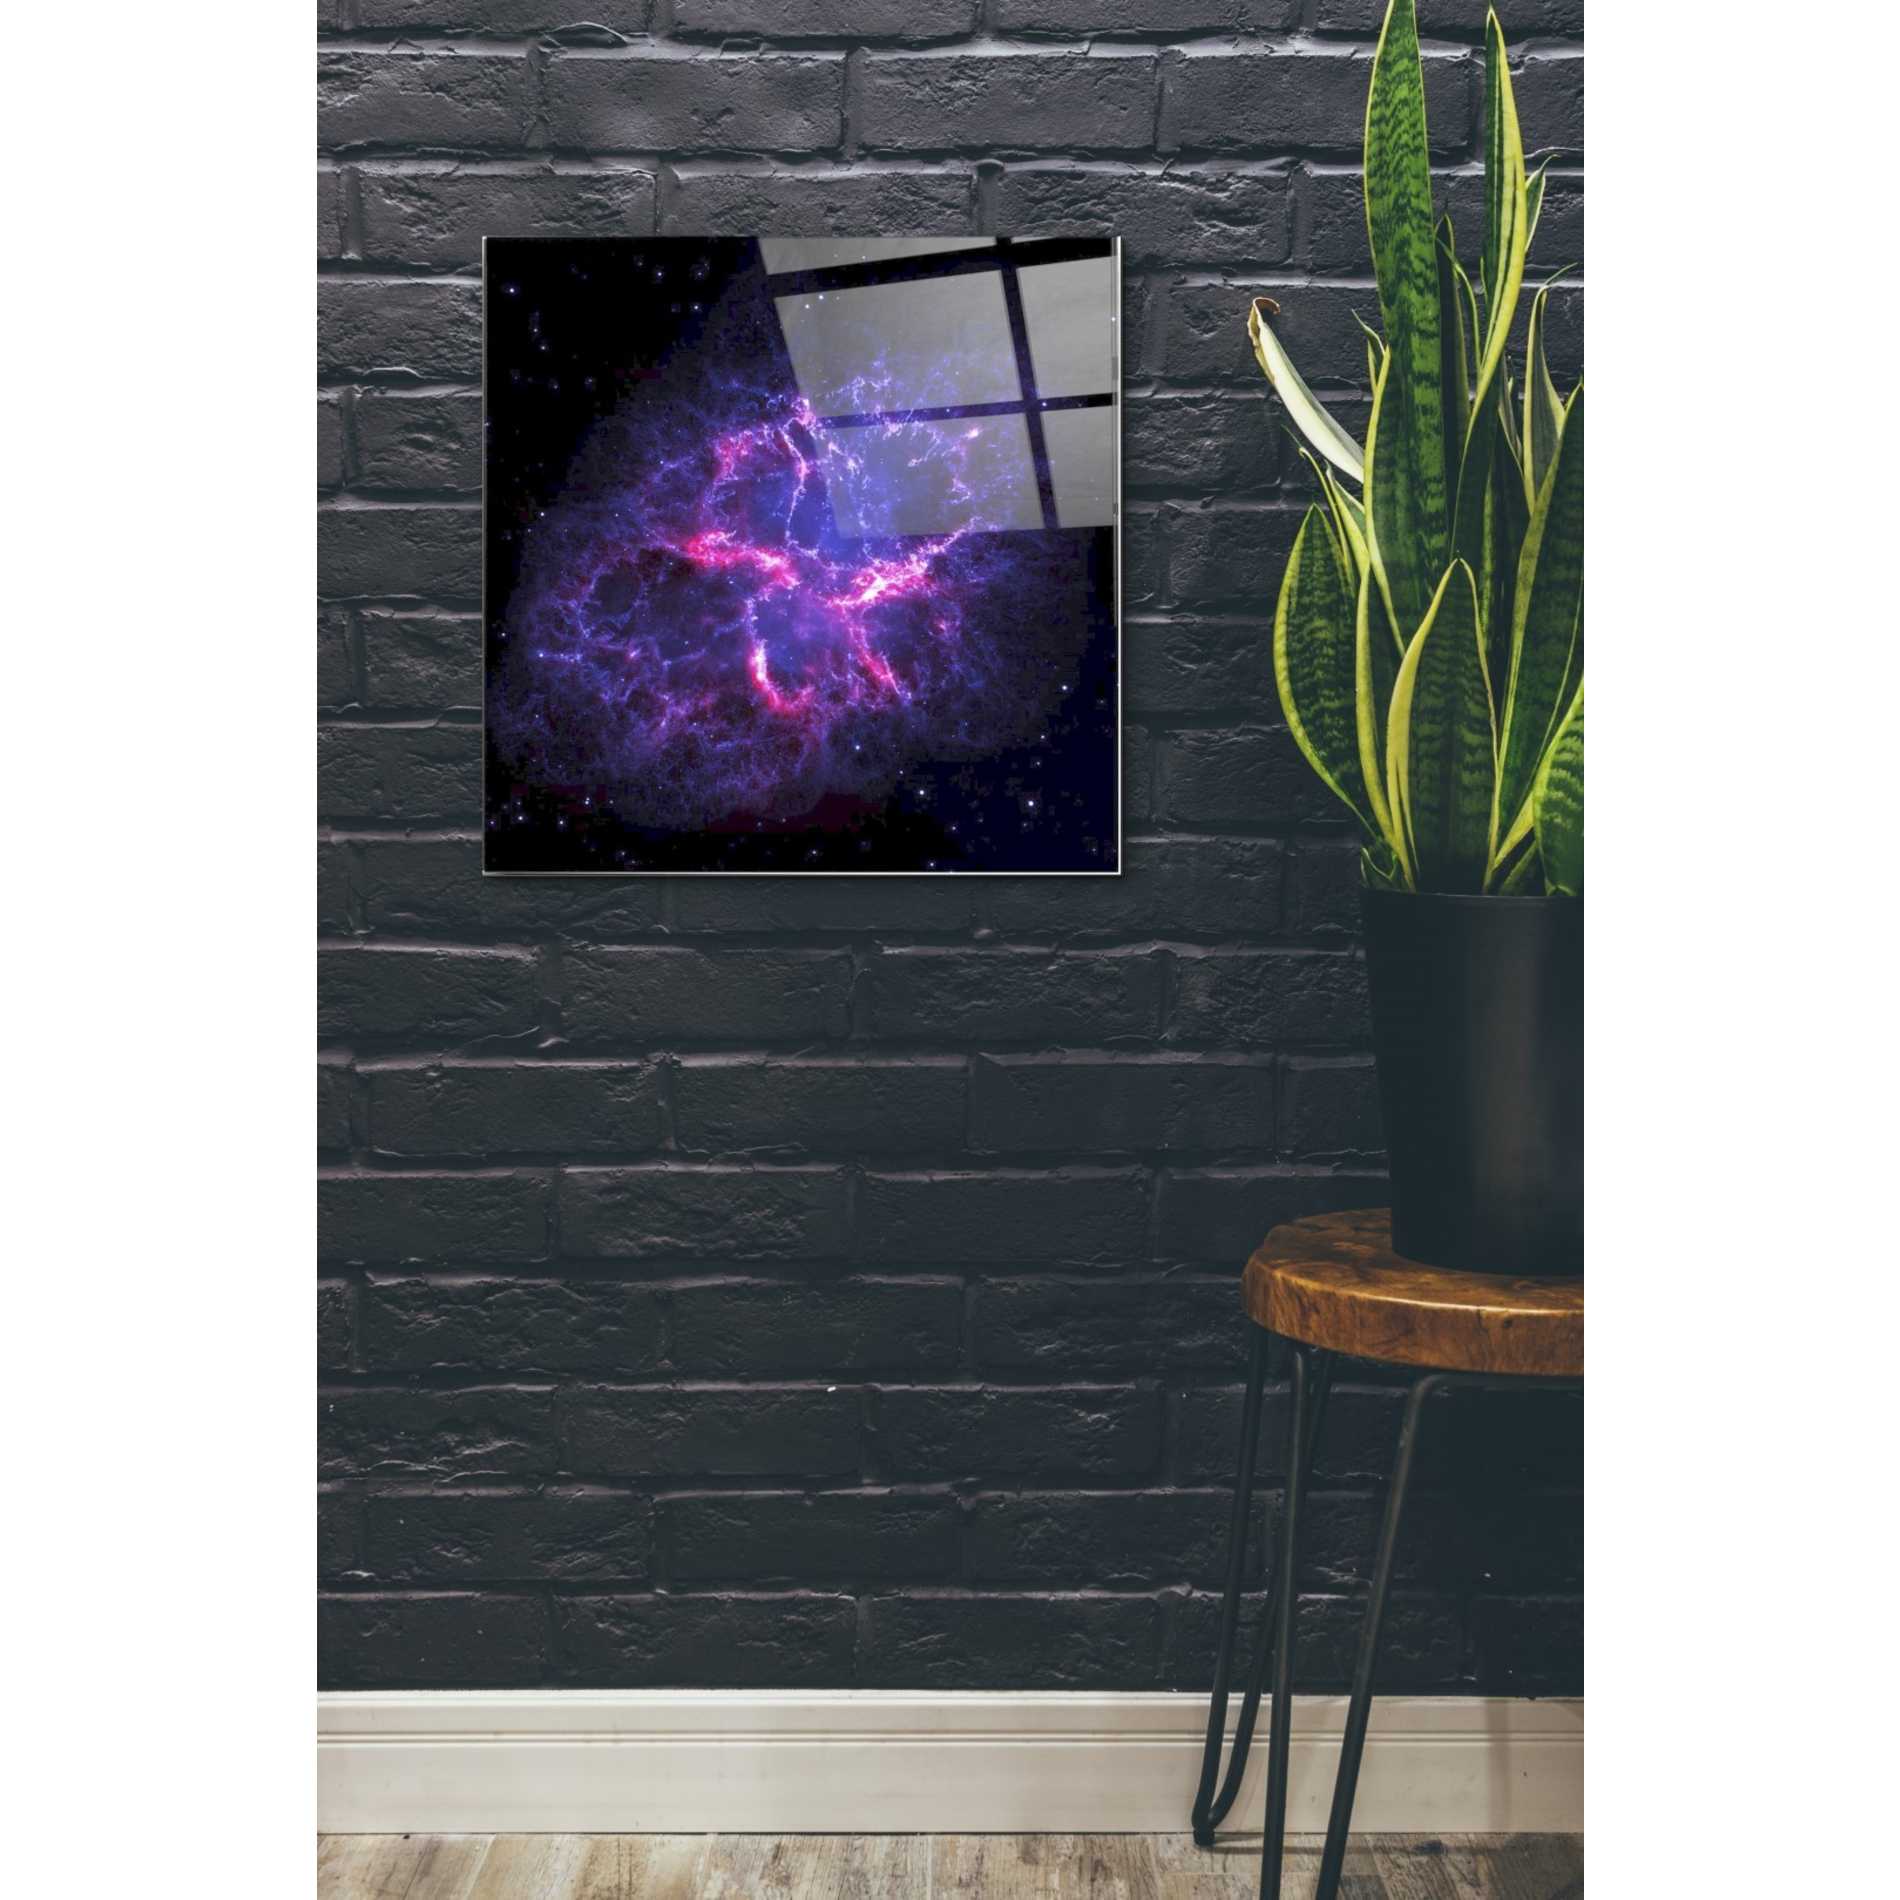 Epic Art "Crab Nebula" Hubble Space Telescope Acrylic Glass Wall Art,24x24